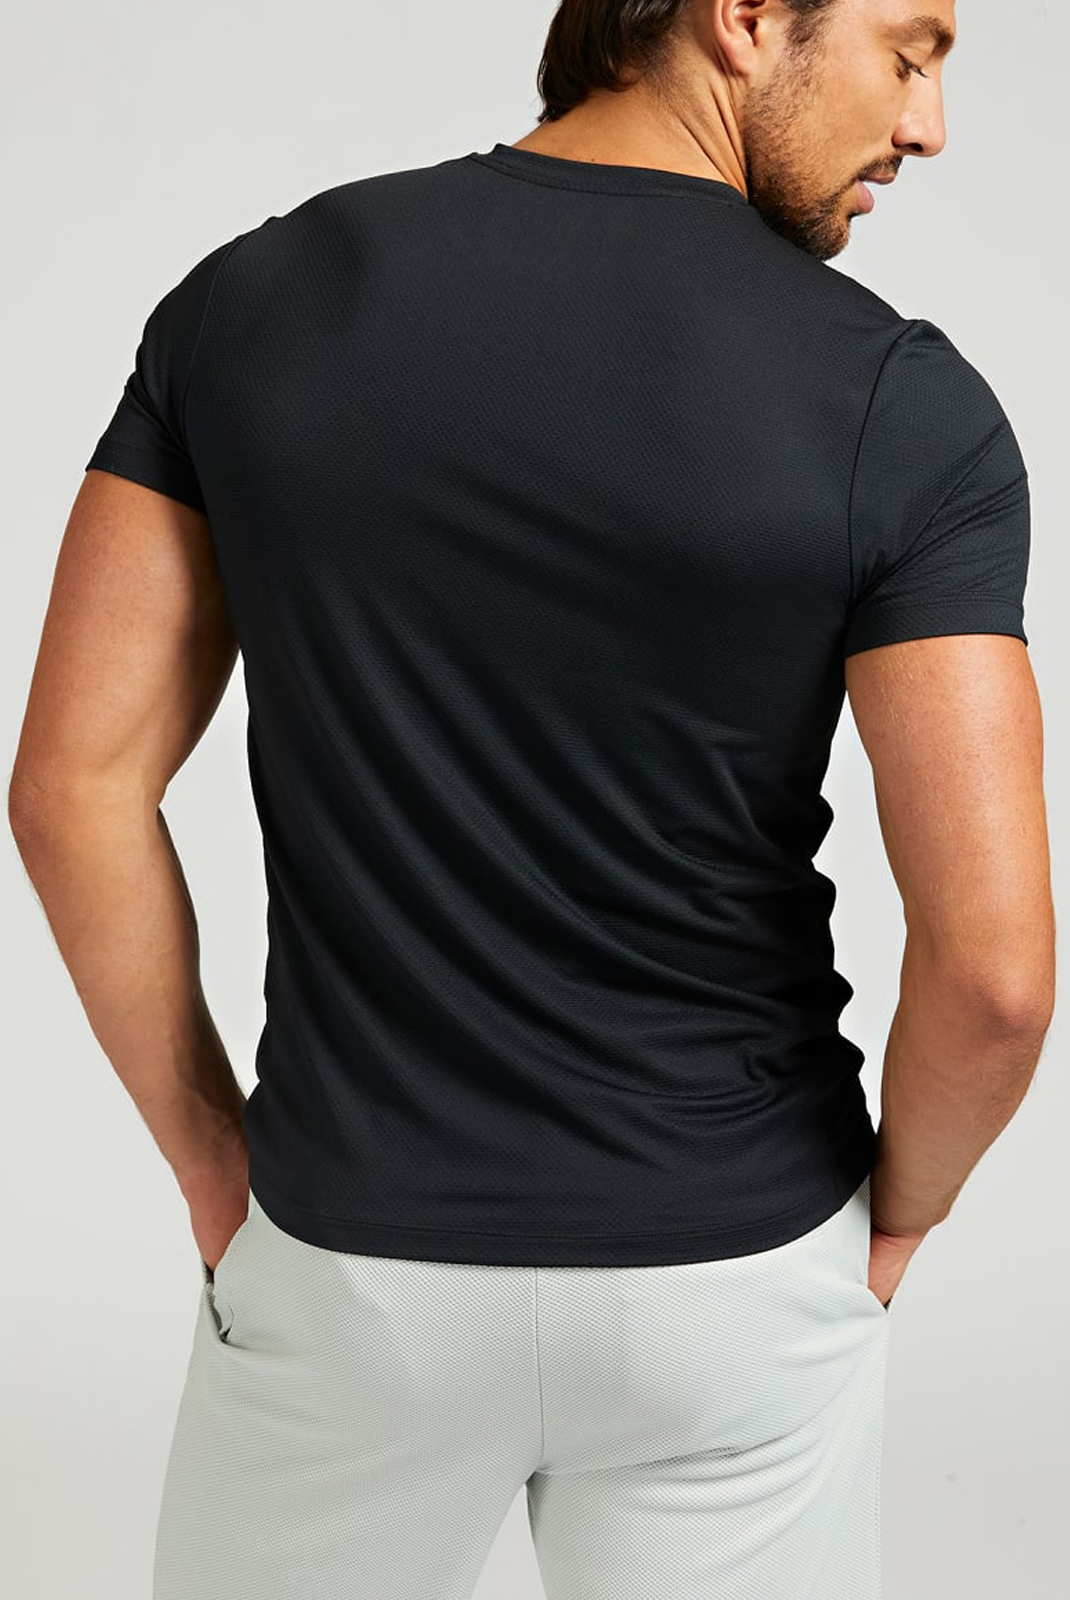 Tee-shirt noir microfibre manches courtes Guess - U1ga37 